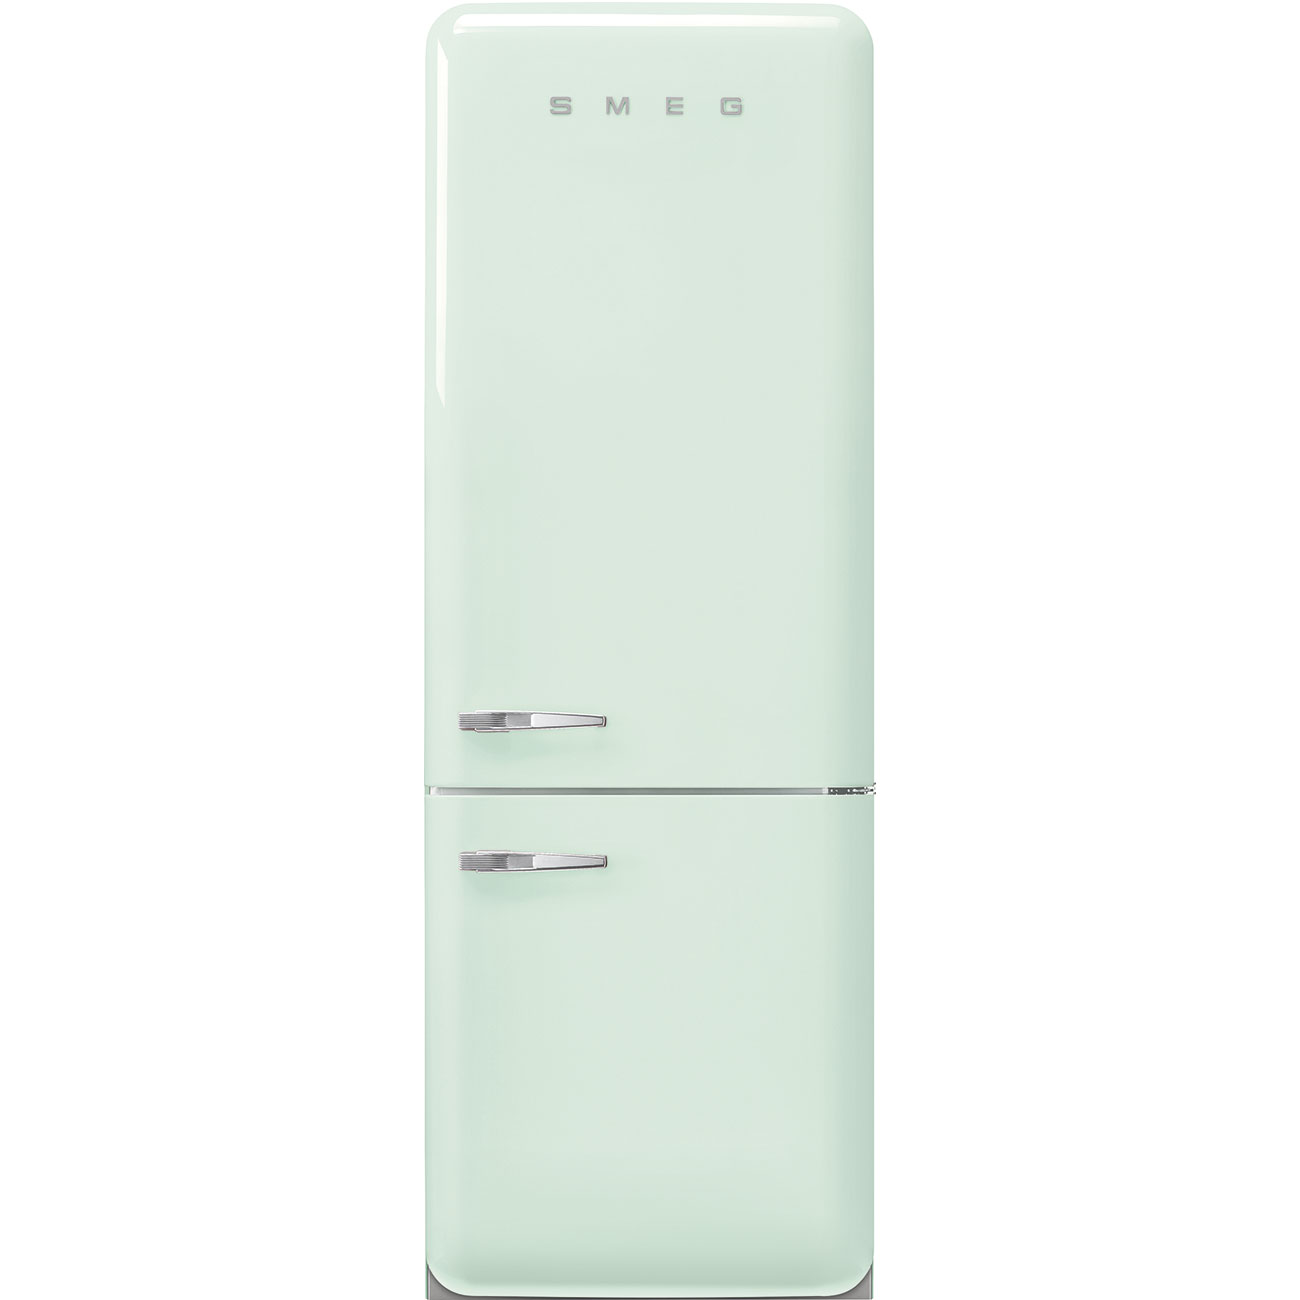 Watergroen koelkast - Smeg_1